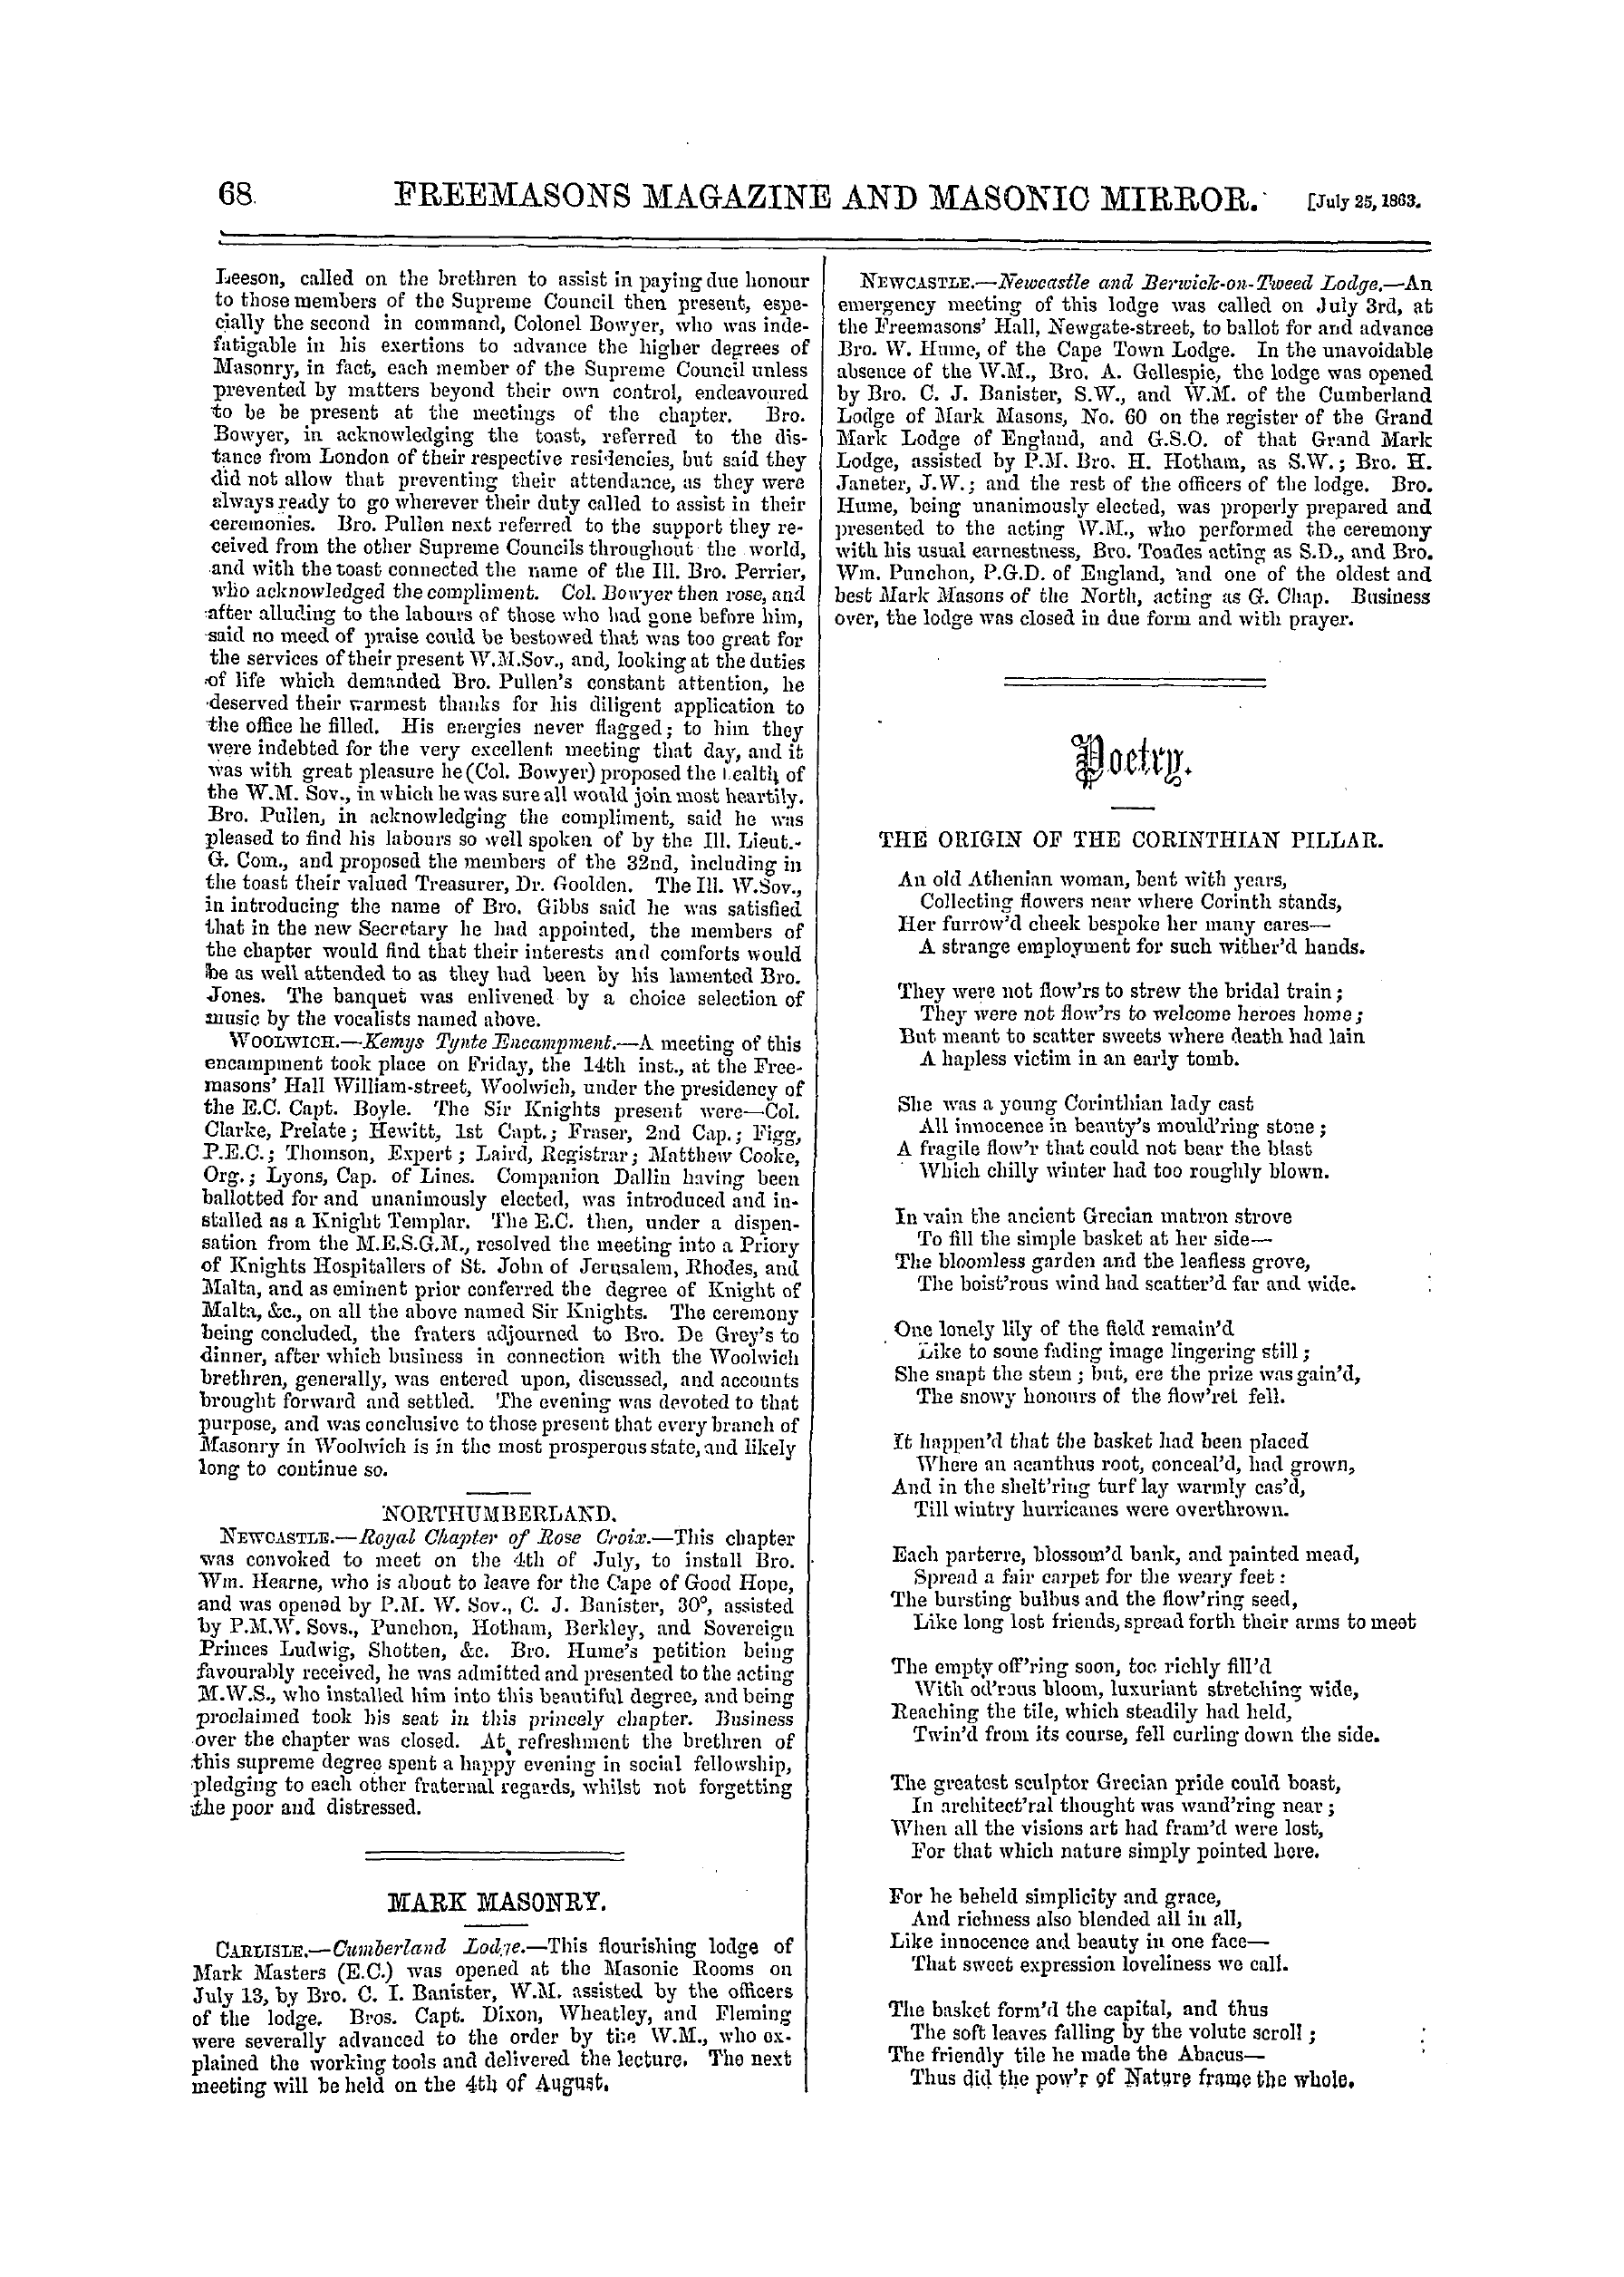 The Freemasons' Monthly Magazine: 1863-07-25: 16